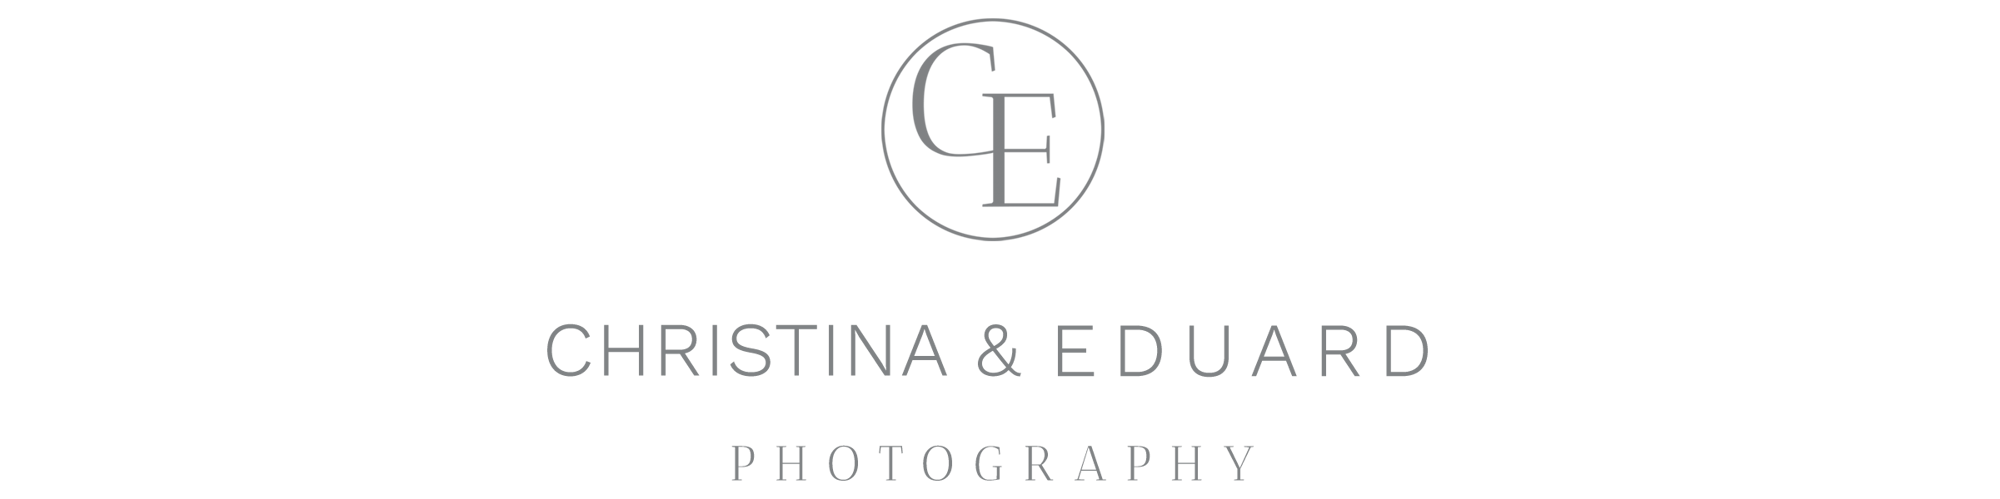 Christina und Eduard Logo